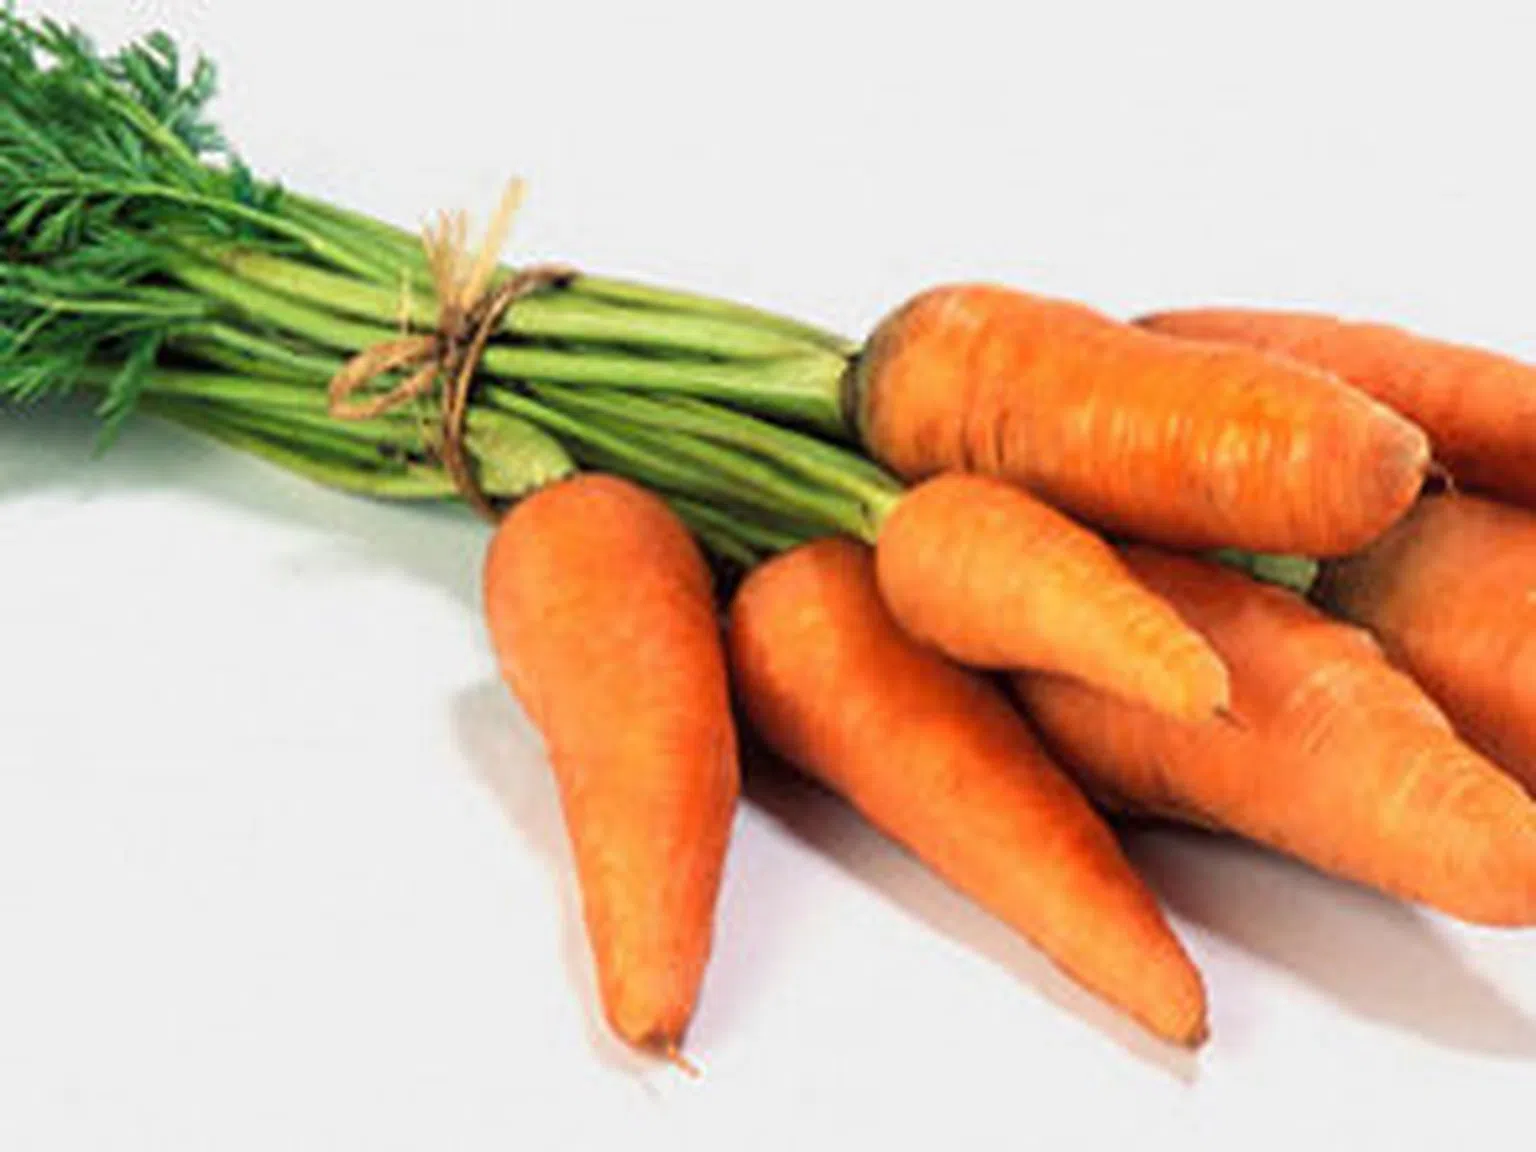 Моркови и лук пазят тялото от вируси